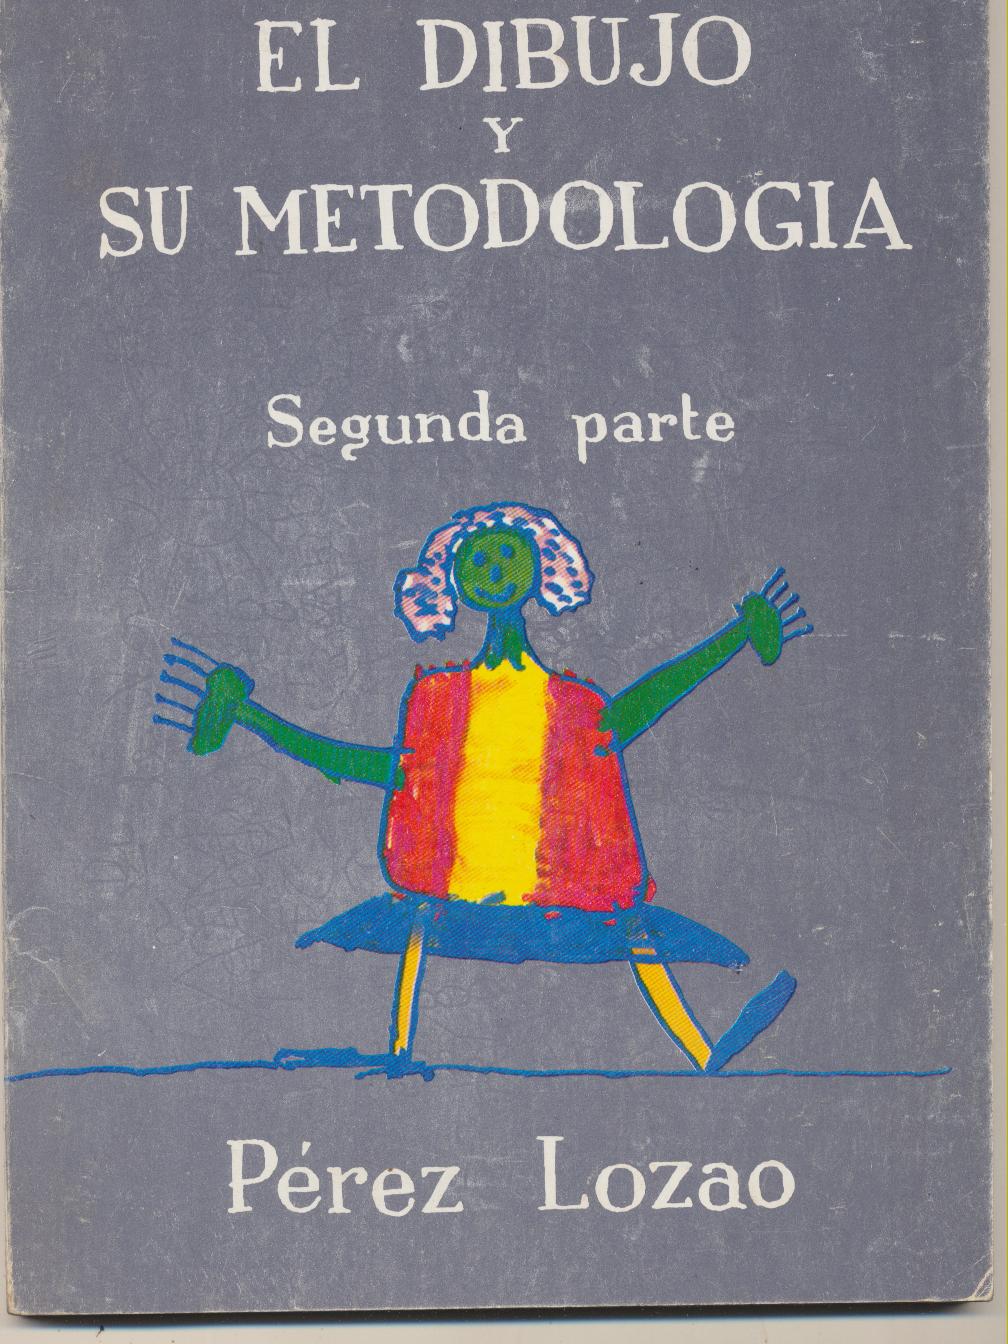 El Dibujo y su Metodología. Pérez Lozano. 1968